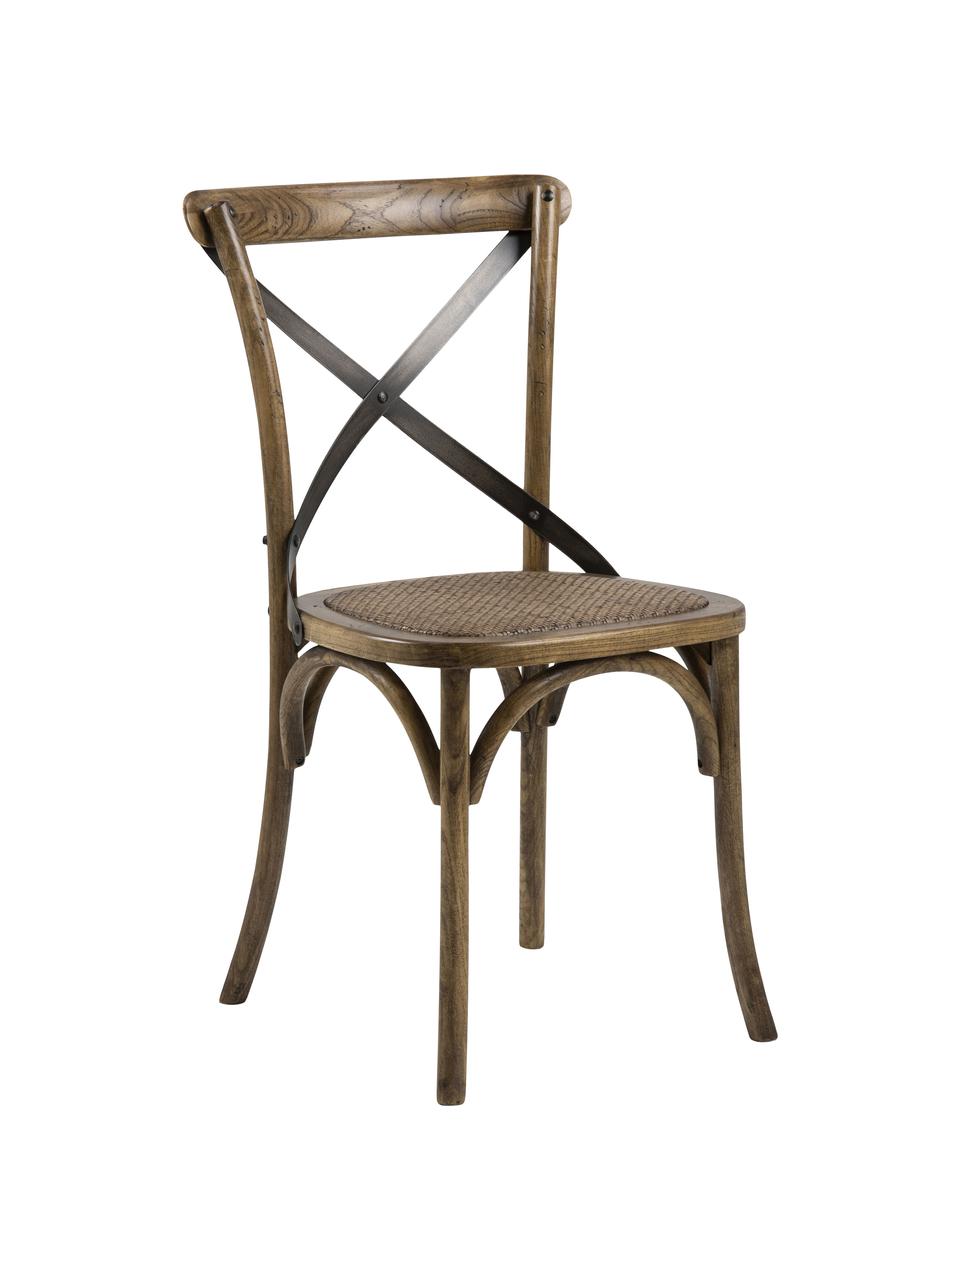 Holzstuhl Vintage mit Rattan-Sitzfläche, Gestell: Birkenholz, lackiert, Sitzfläche: Rattan, lackiert, Birkenholz, lackiert, B 49 x T 55 cm